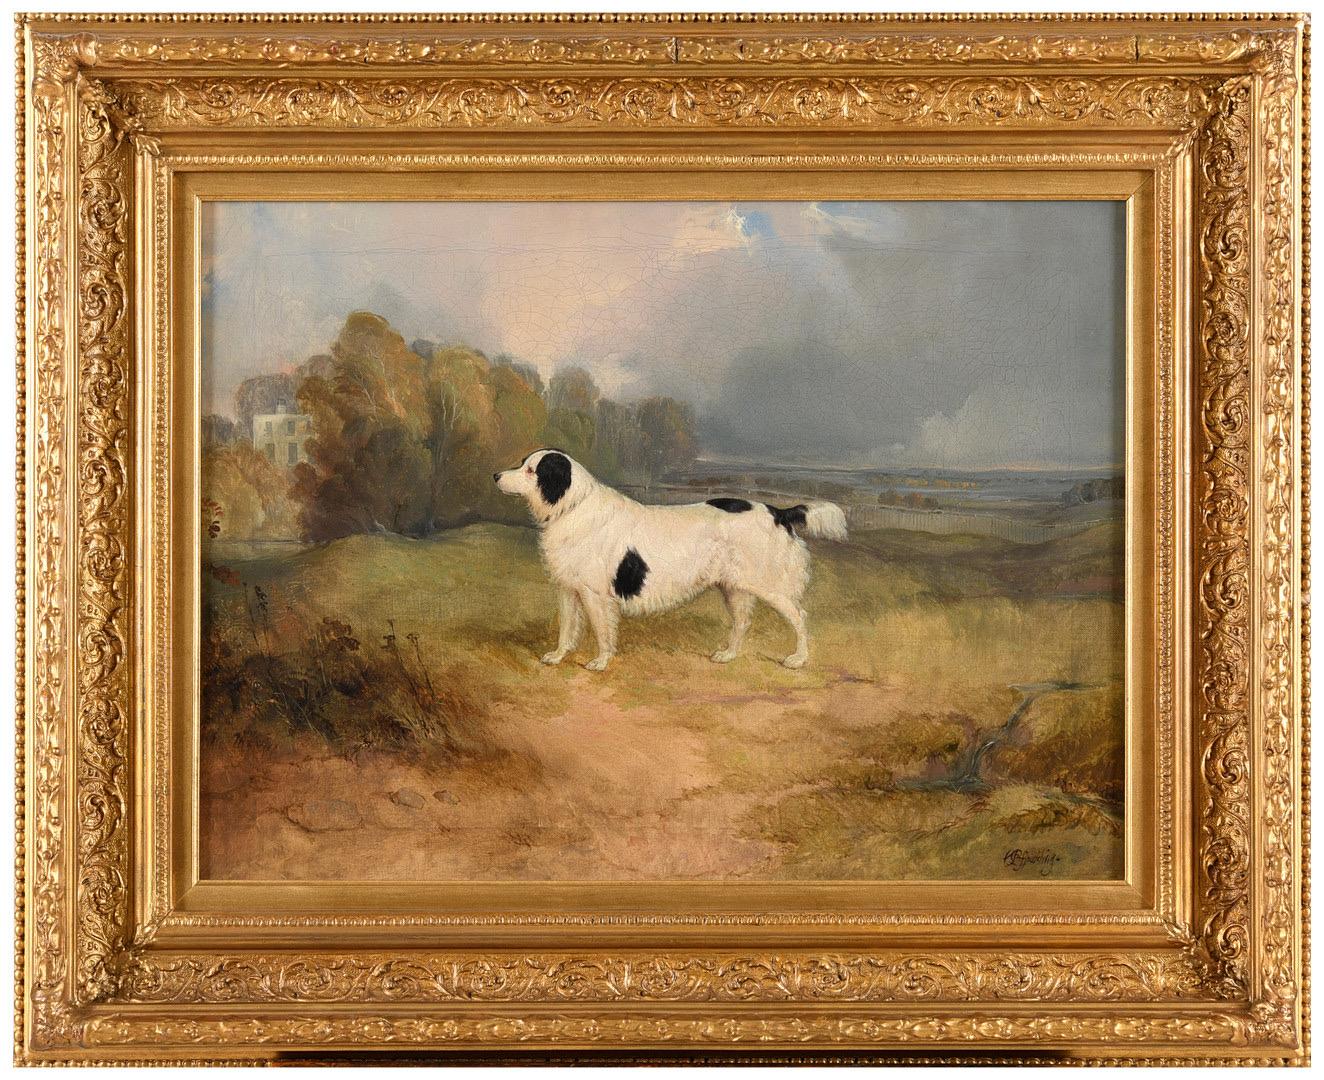 Porträt eines Spanielhundes aus dem 19. Jahrhundert in einer Landschaft, ein Landhaus jenseits des